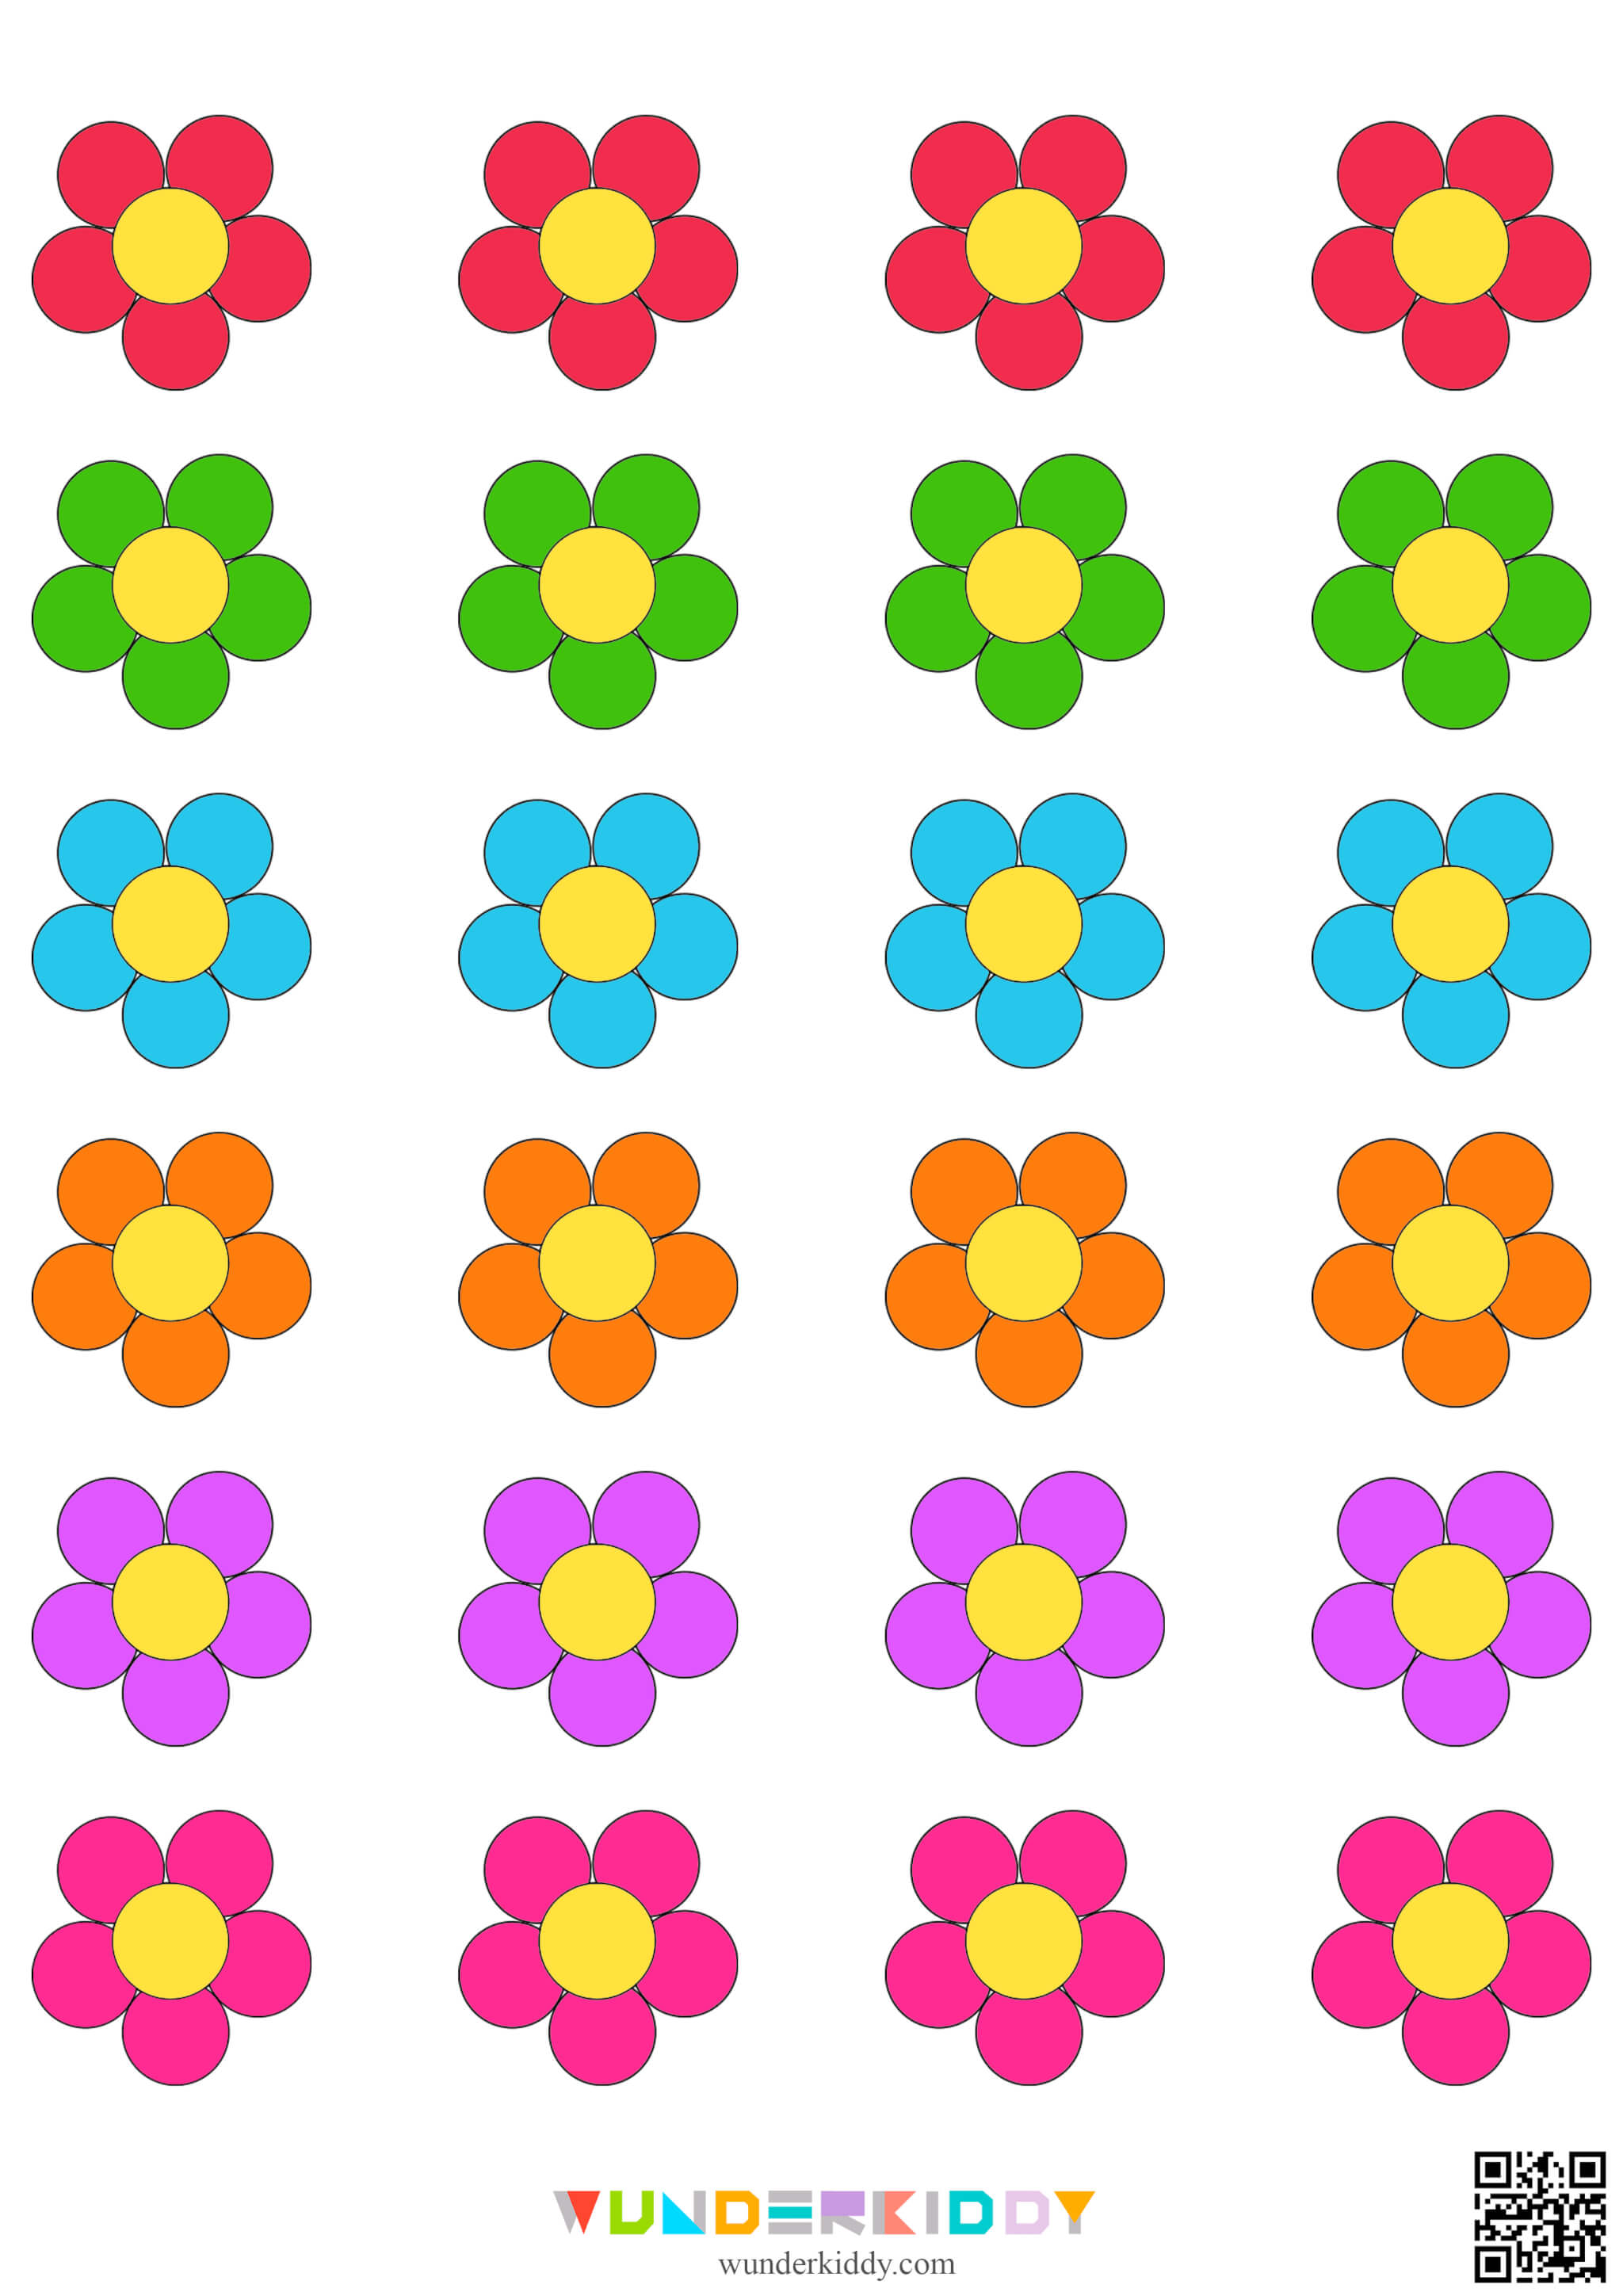 Шаблон для поделки «Горшок для цветов» - Изображение 7